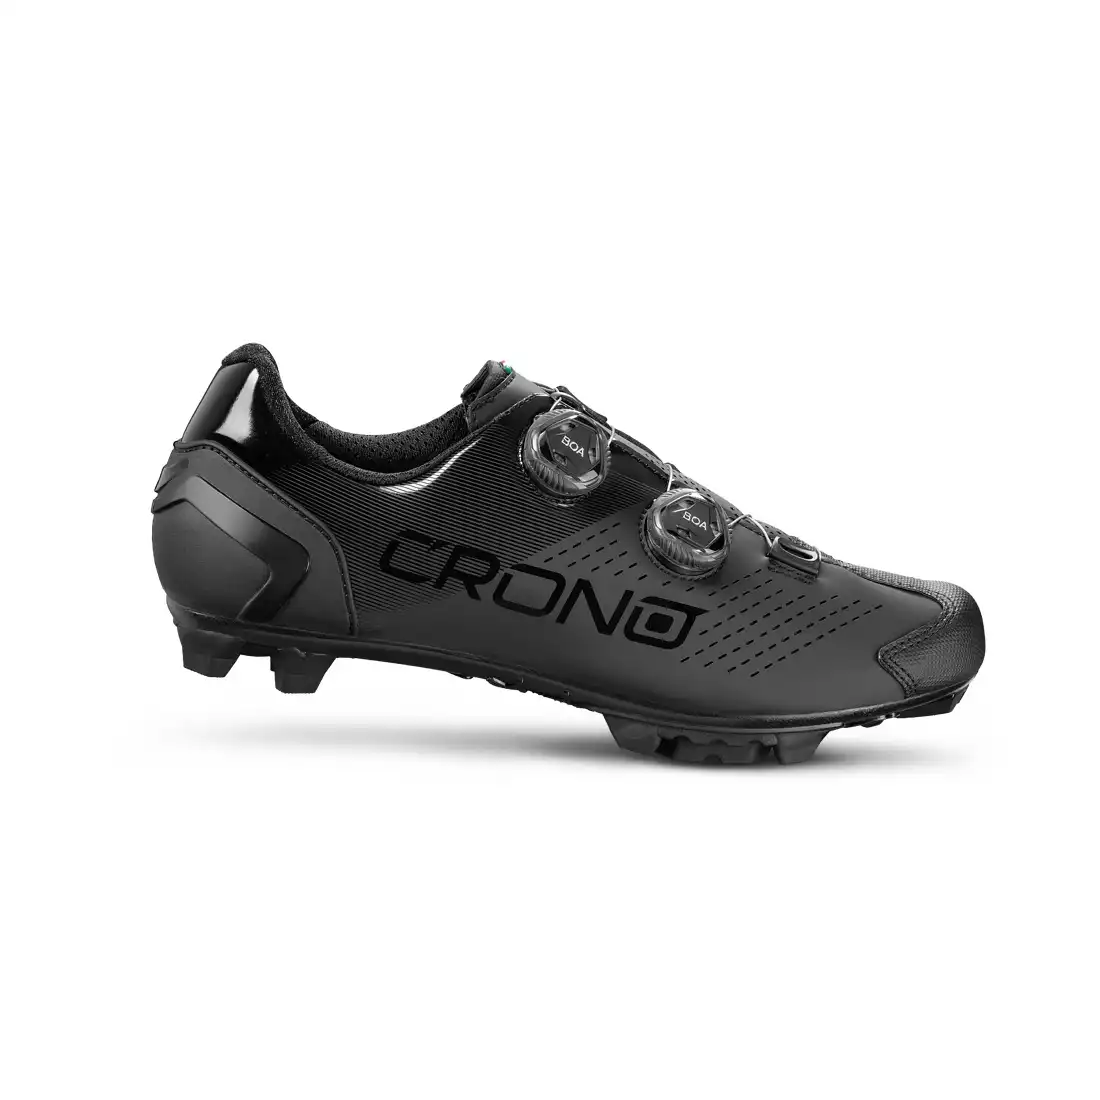 CRONO CX-2-22 Buty rowerowe MTB, kompozyt, czarne 